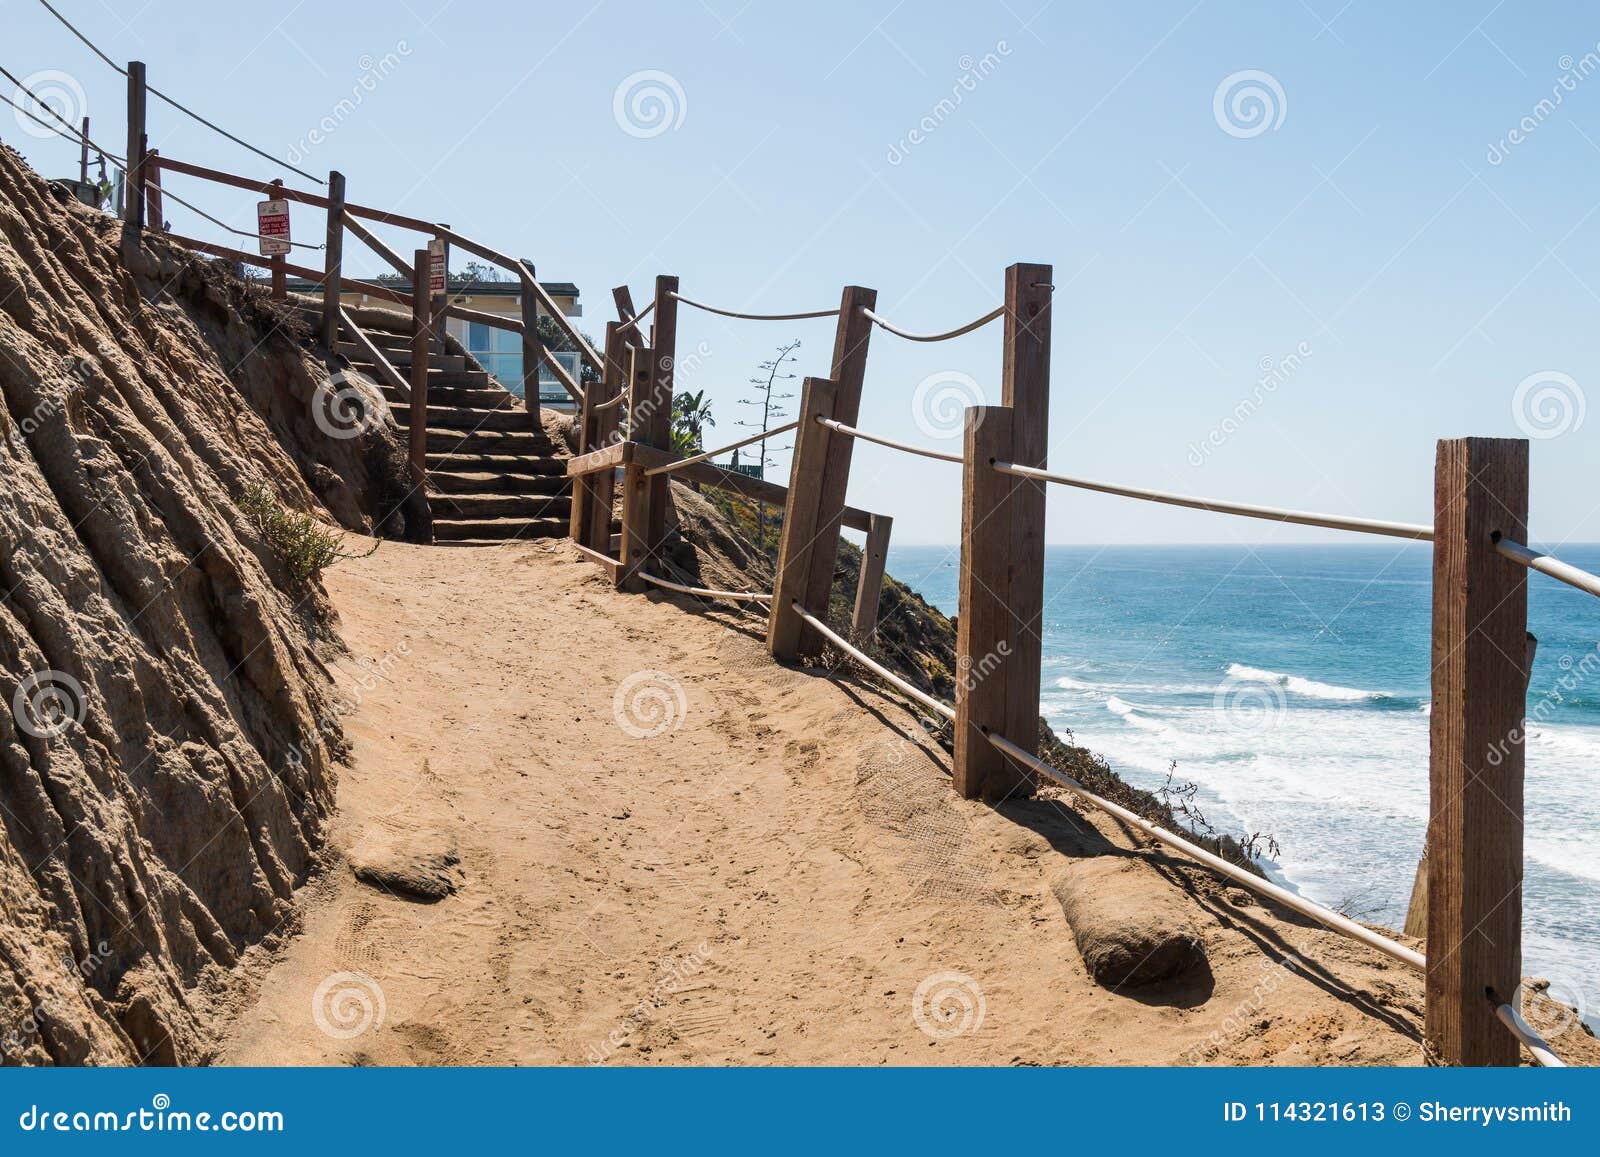 Den smutsslingan och trappan på klippan på fyr` s sätter på land. En smutsslinga och trappan på sidan av en klippa på fyr` s sätter på land i Encinitas, Kalifornien